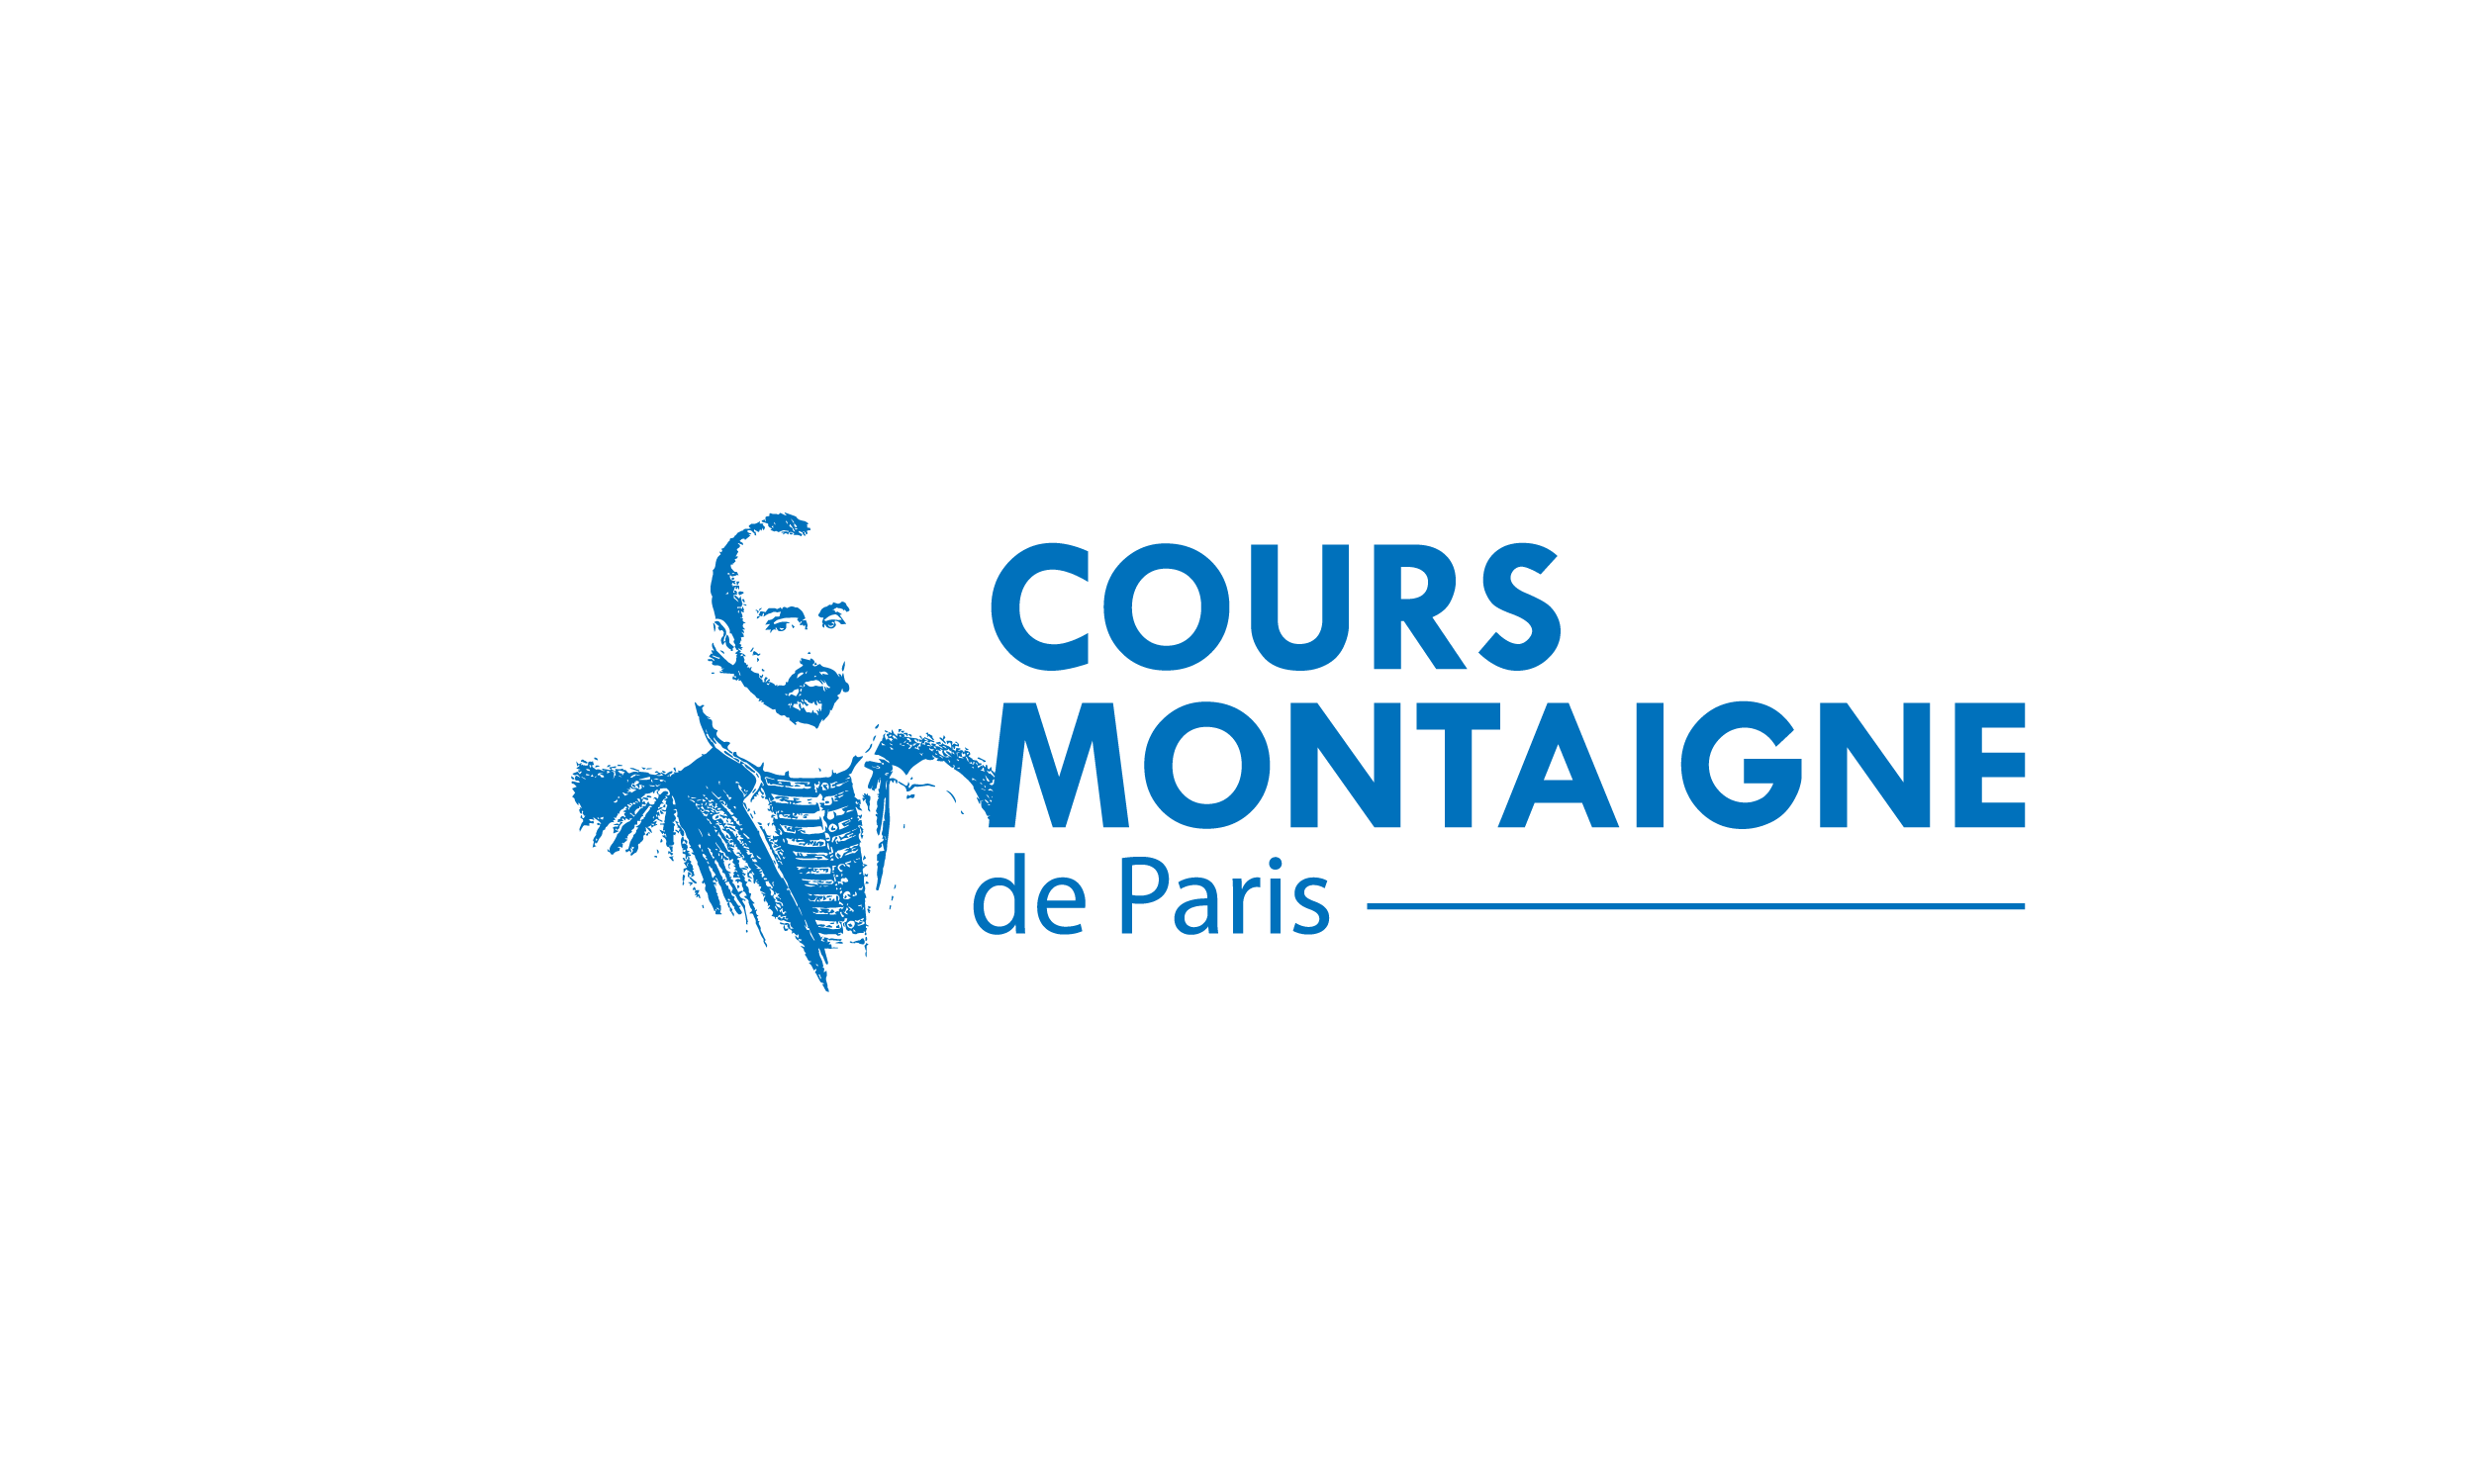 Cours Montaigne de Paris